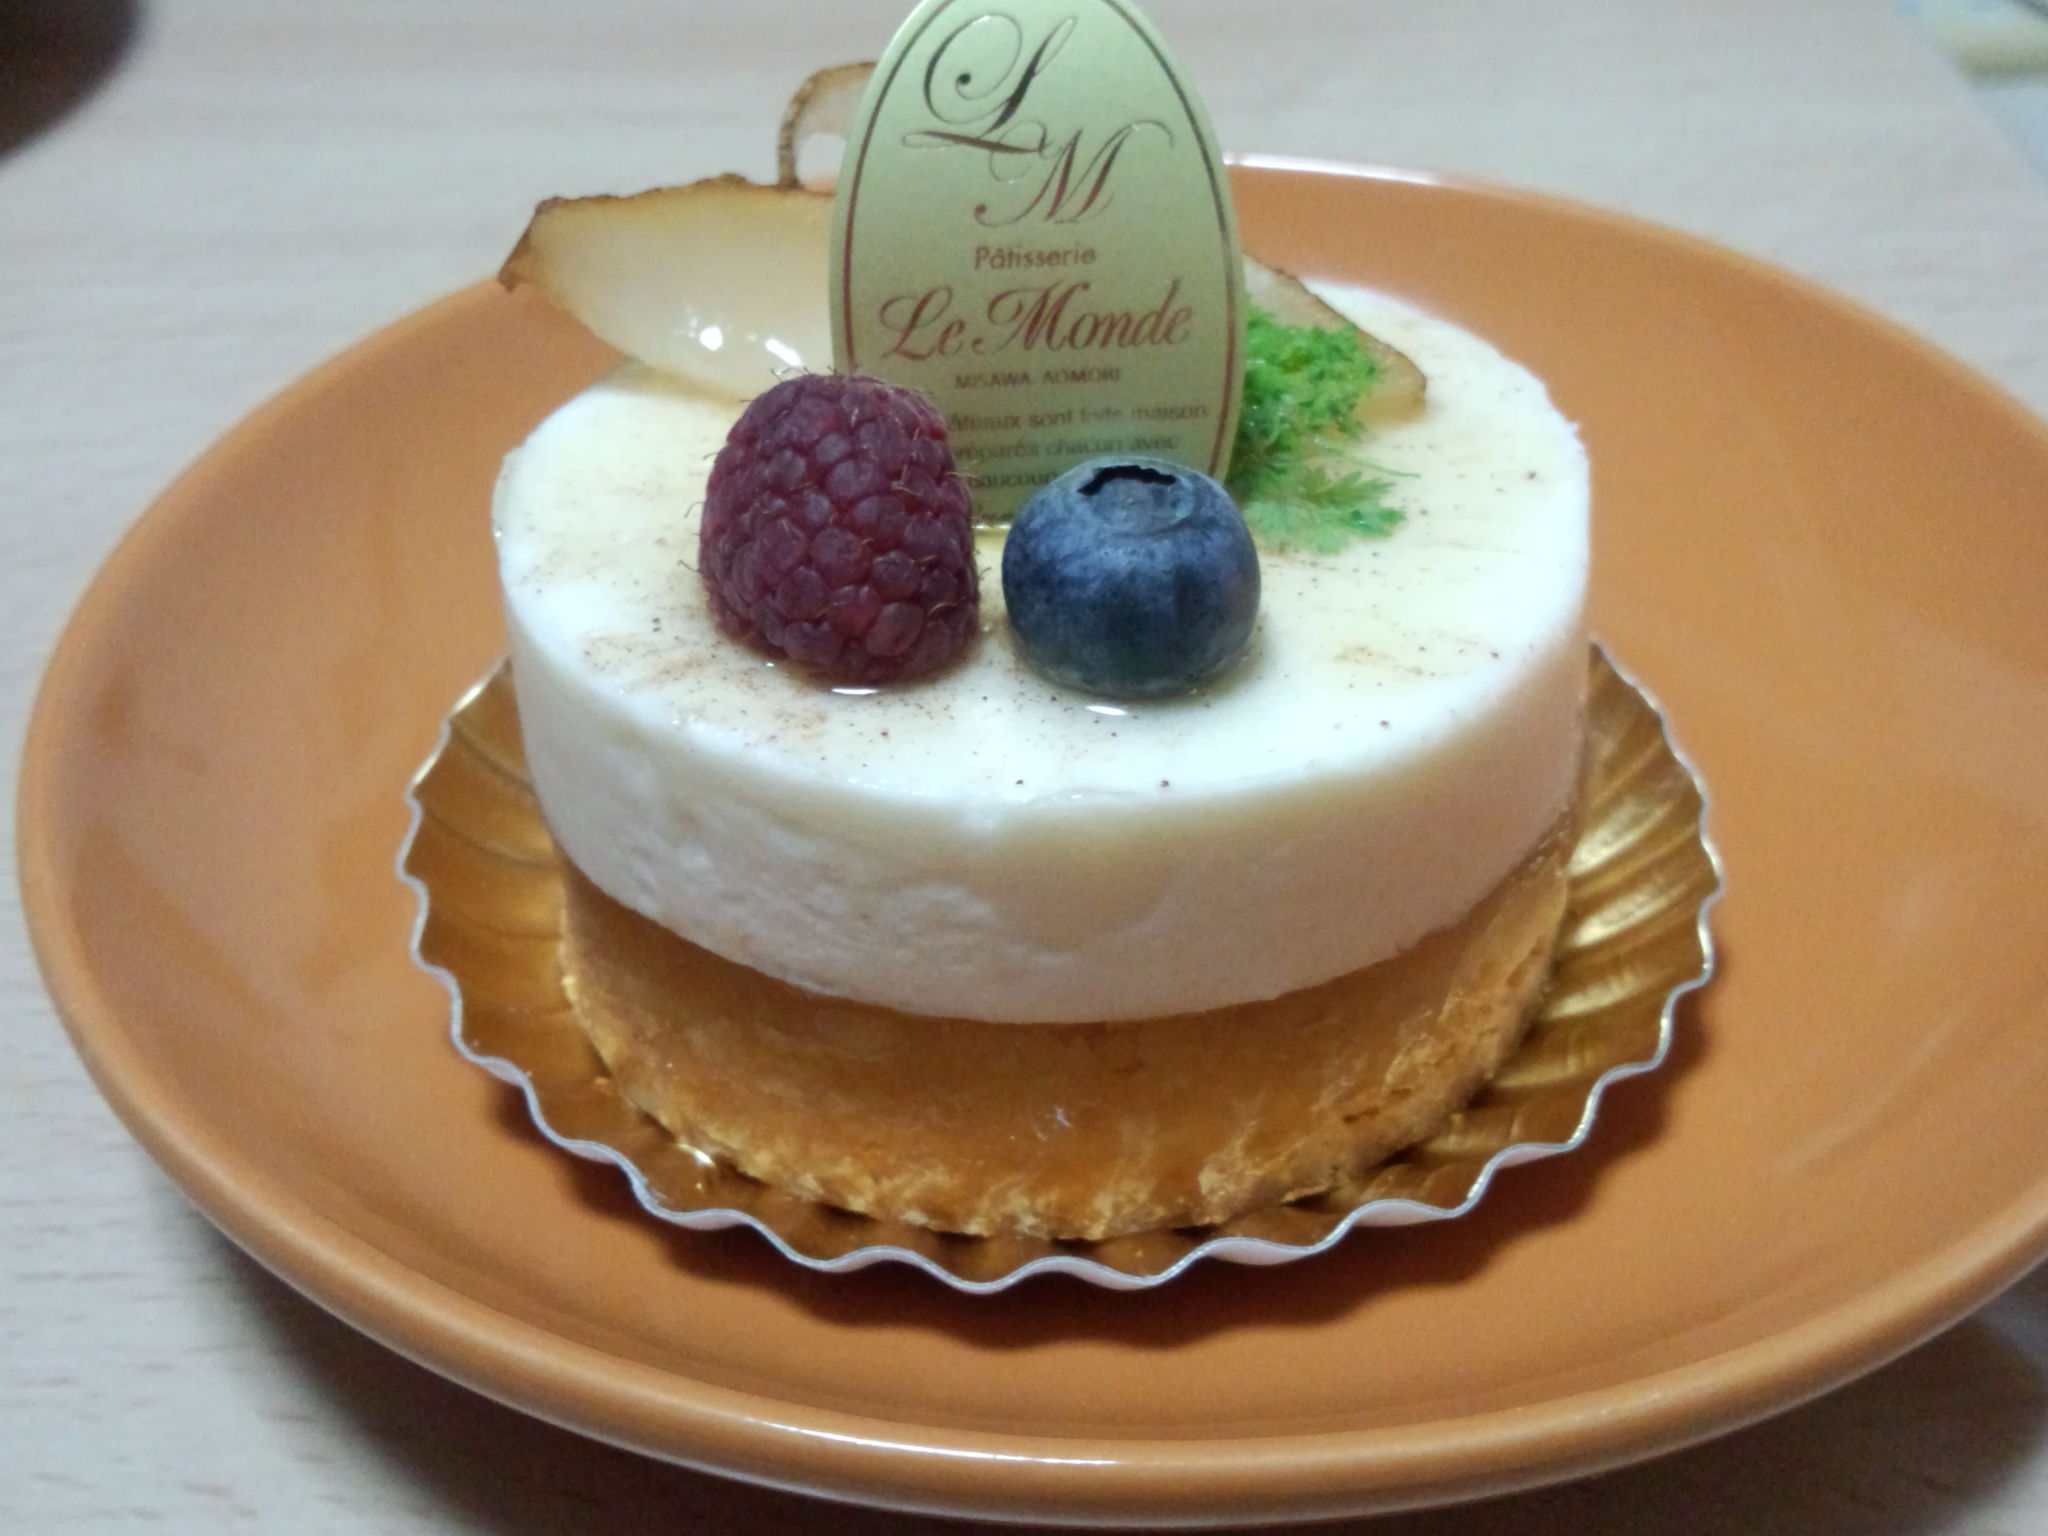 欧風菓子工房ルモンド 三沢市のケーキ屋さん 平凡ですが